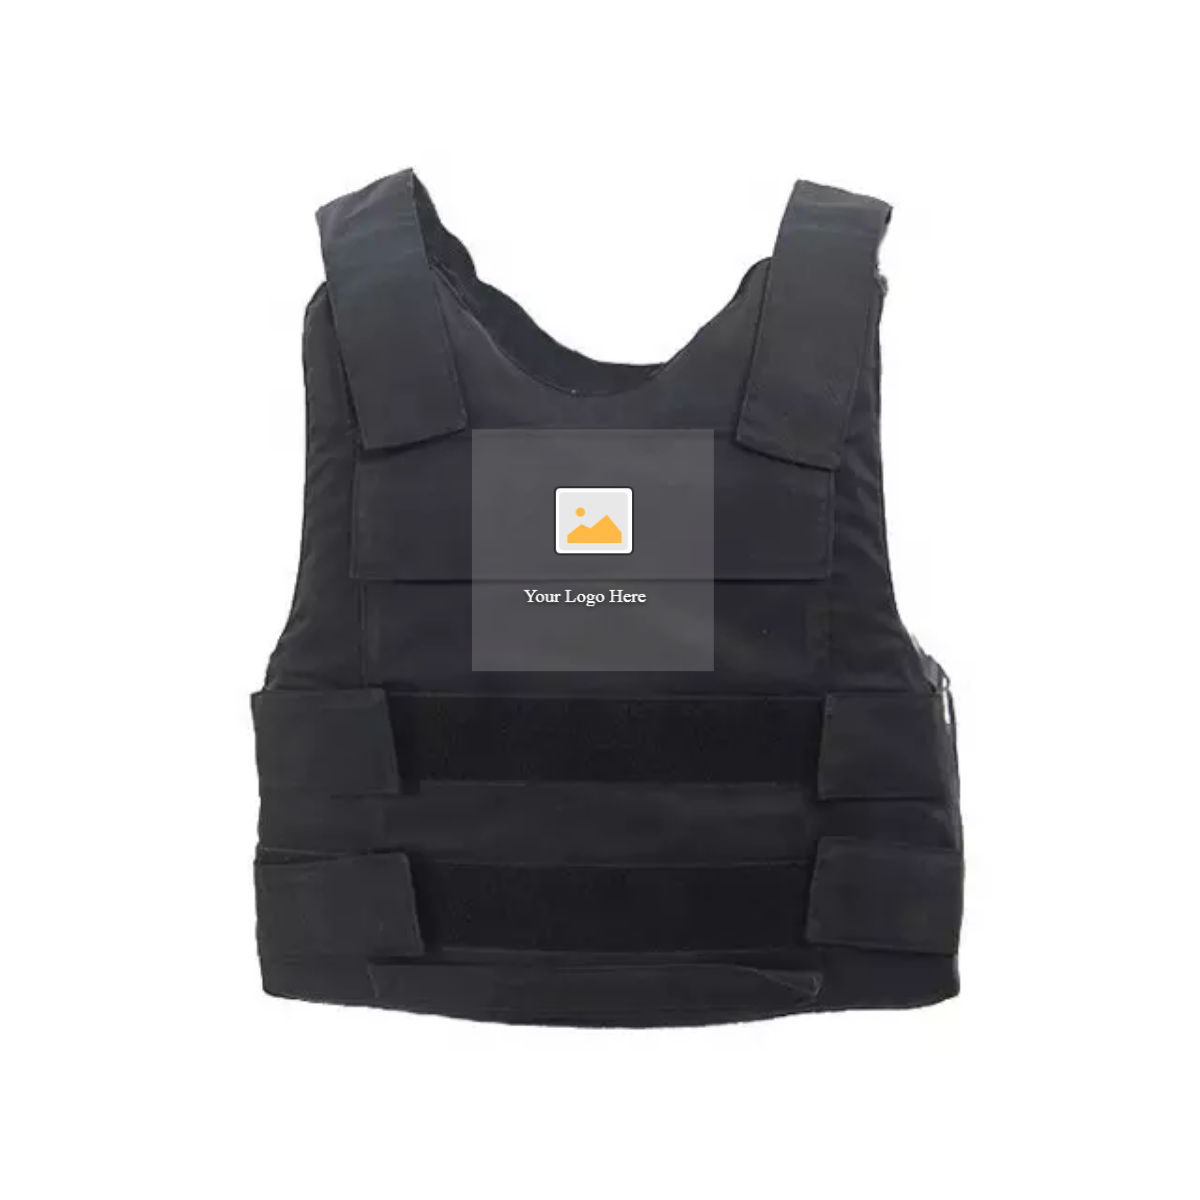 Level 4 Military ballistic full body armor bulletproof vest